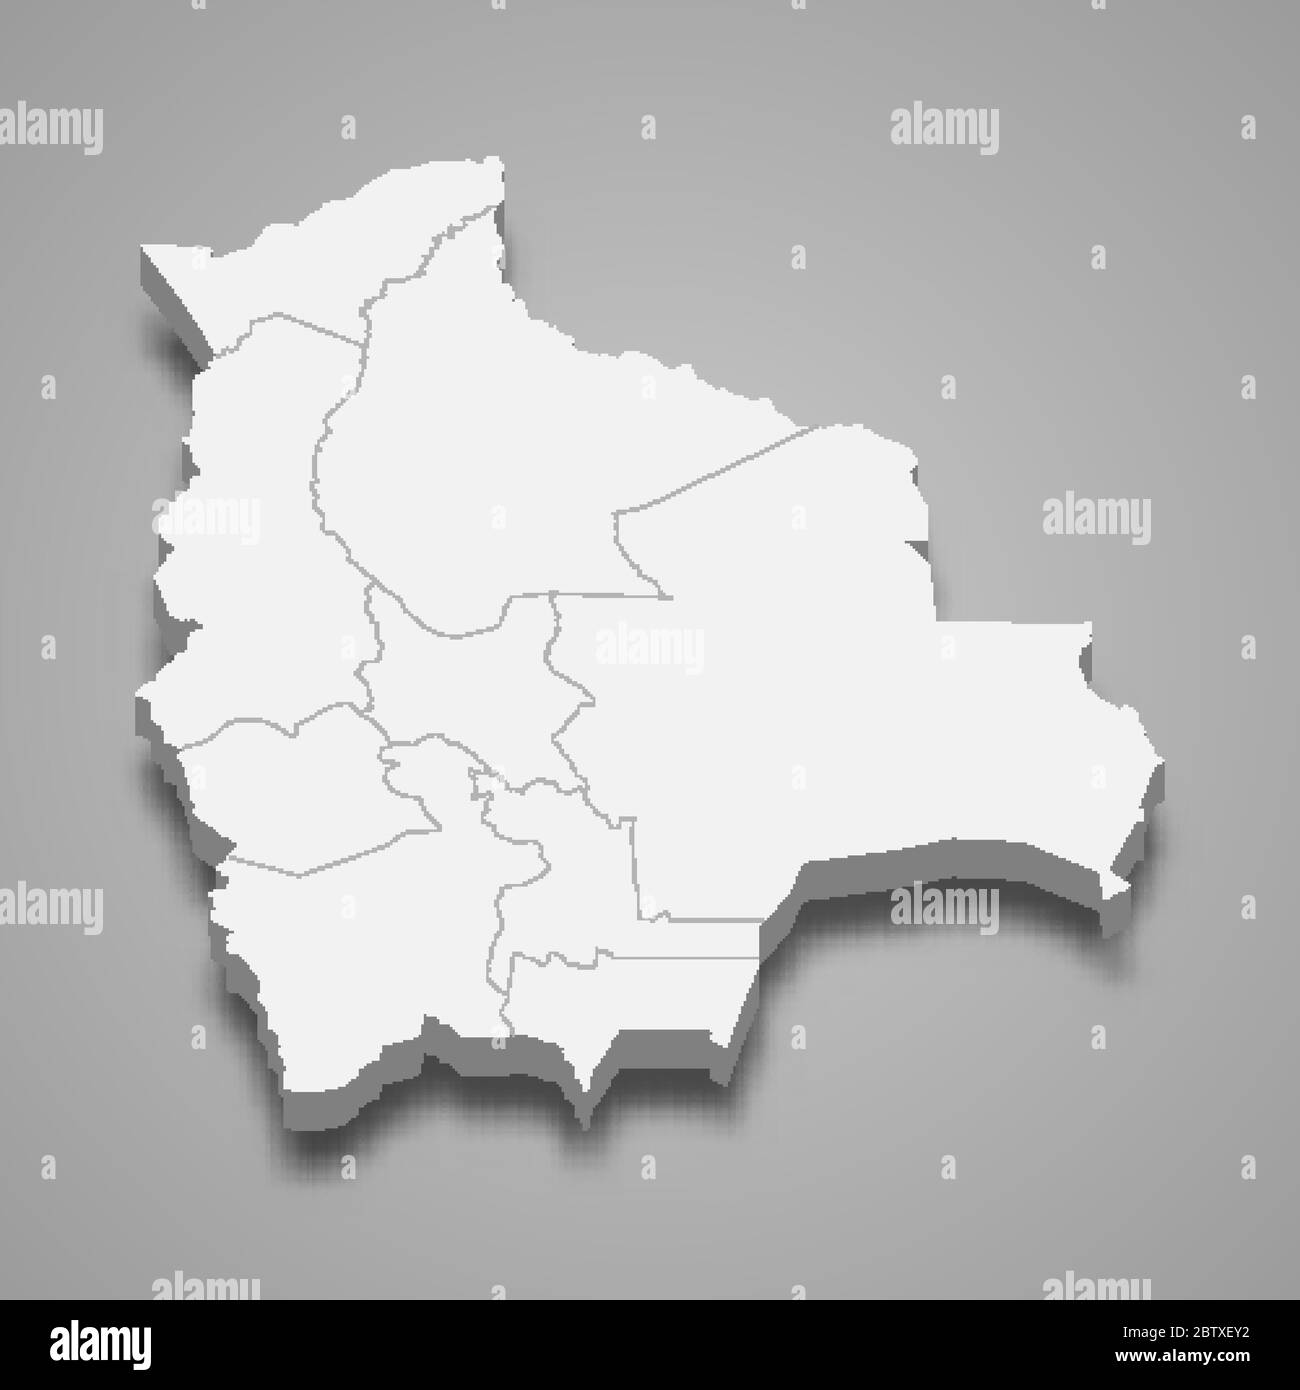 Carte 3d de la Bolivie avec frontières des régions Illustration de Vecteur